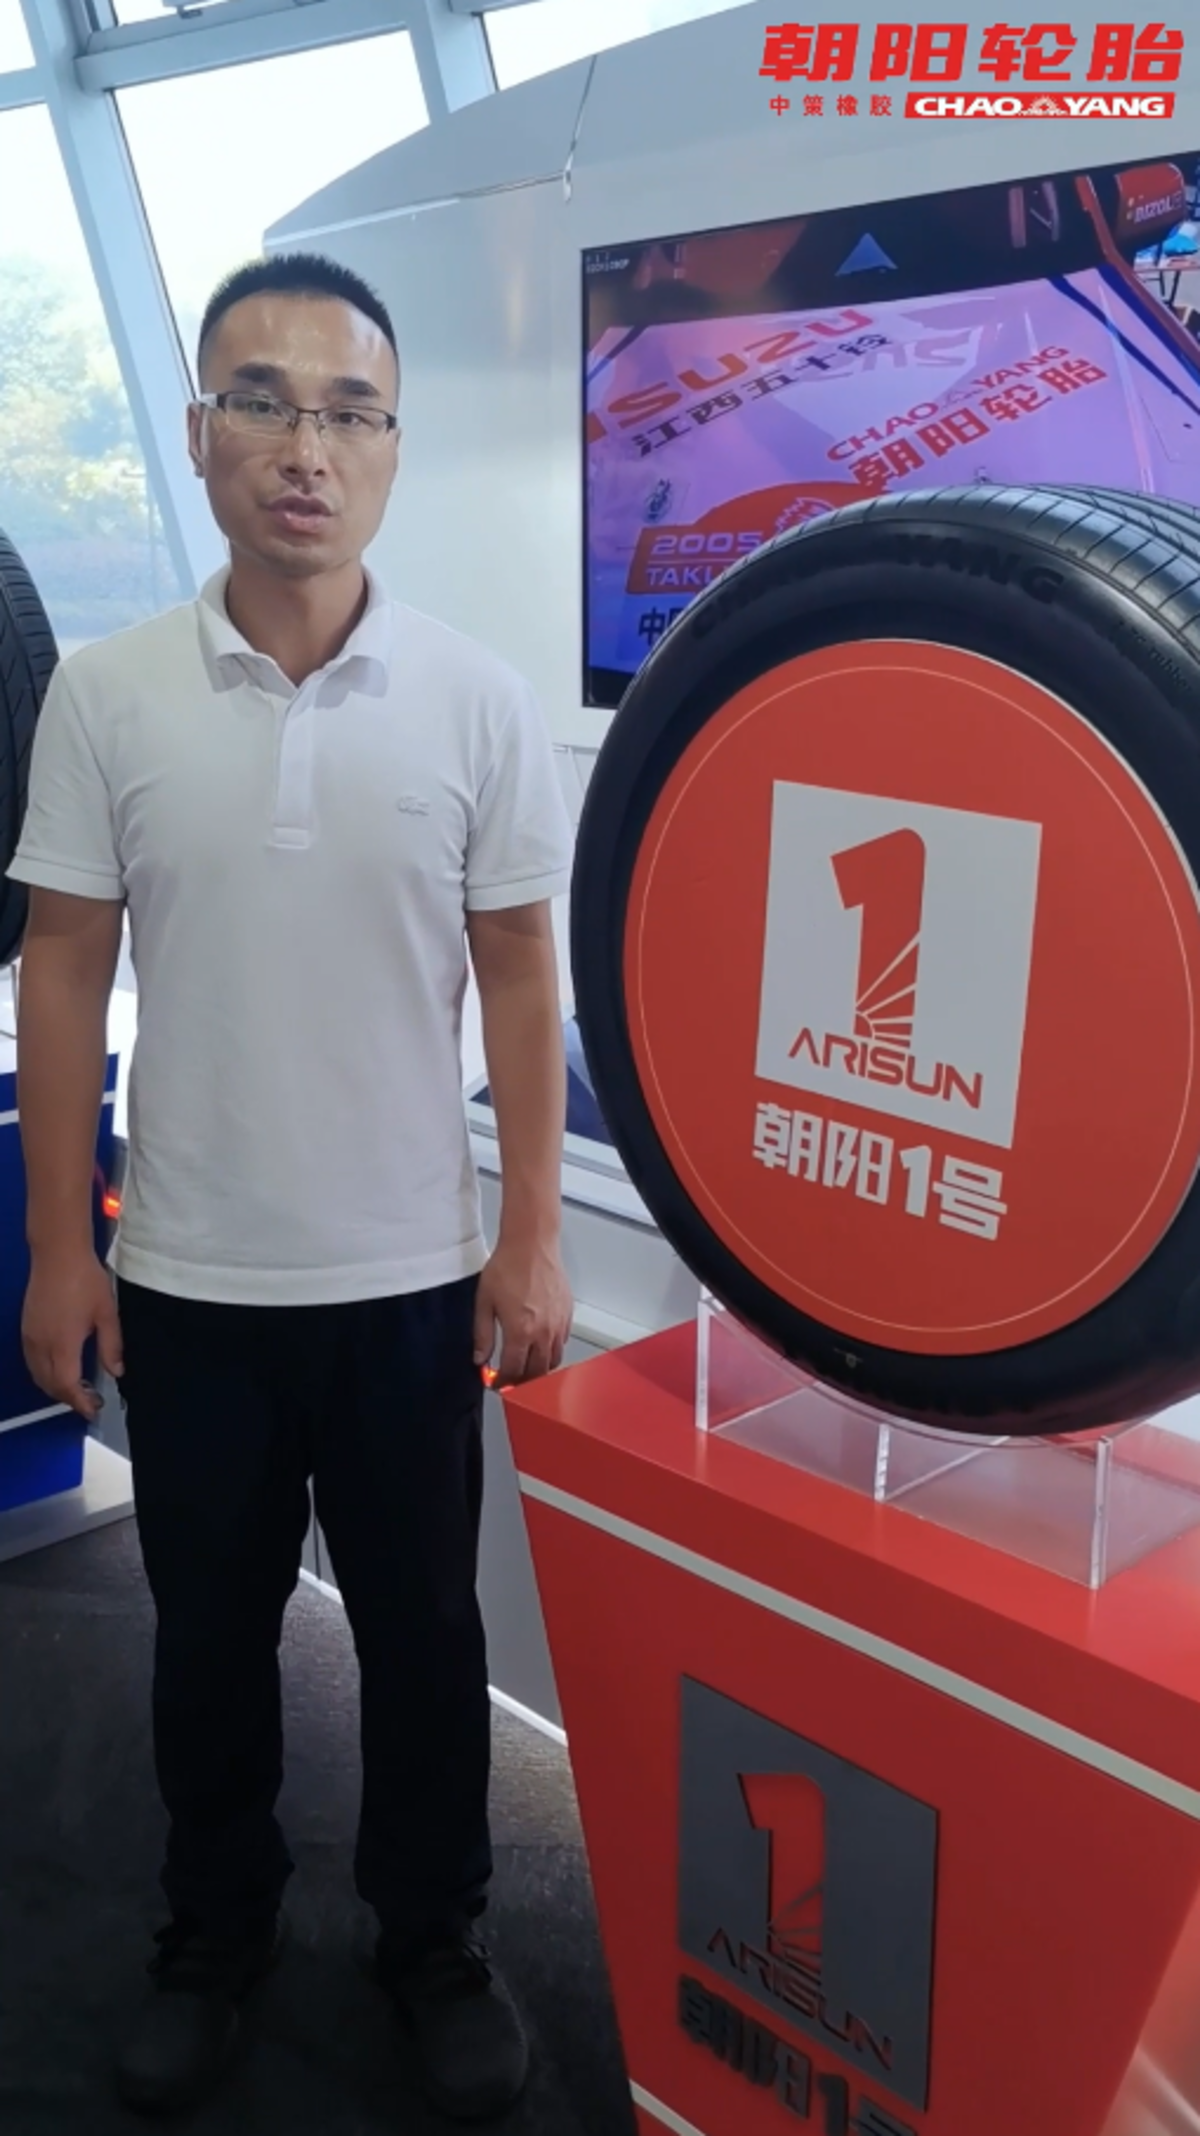 中国橡胶工业协会主办直播：轮胎那些事